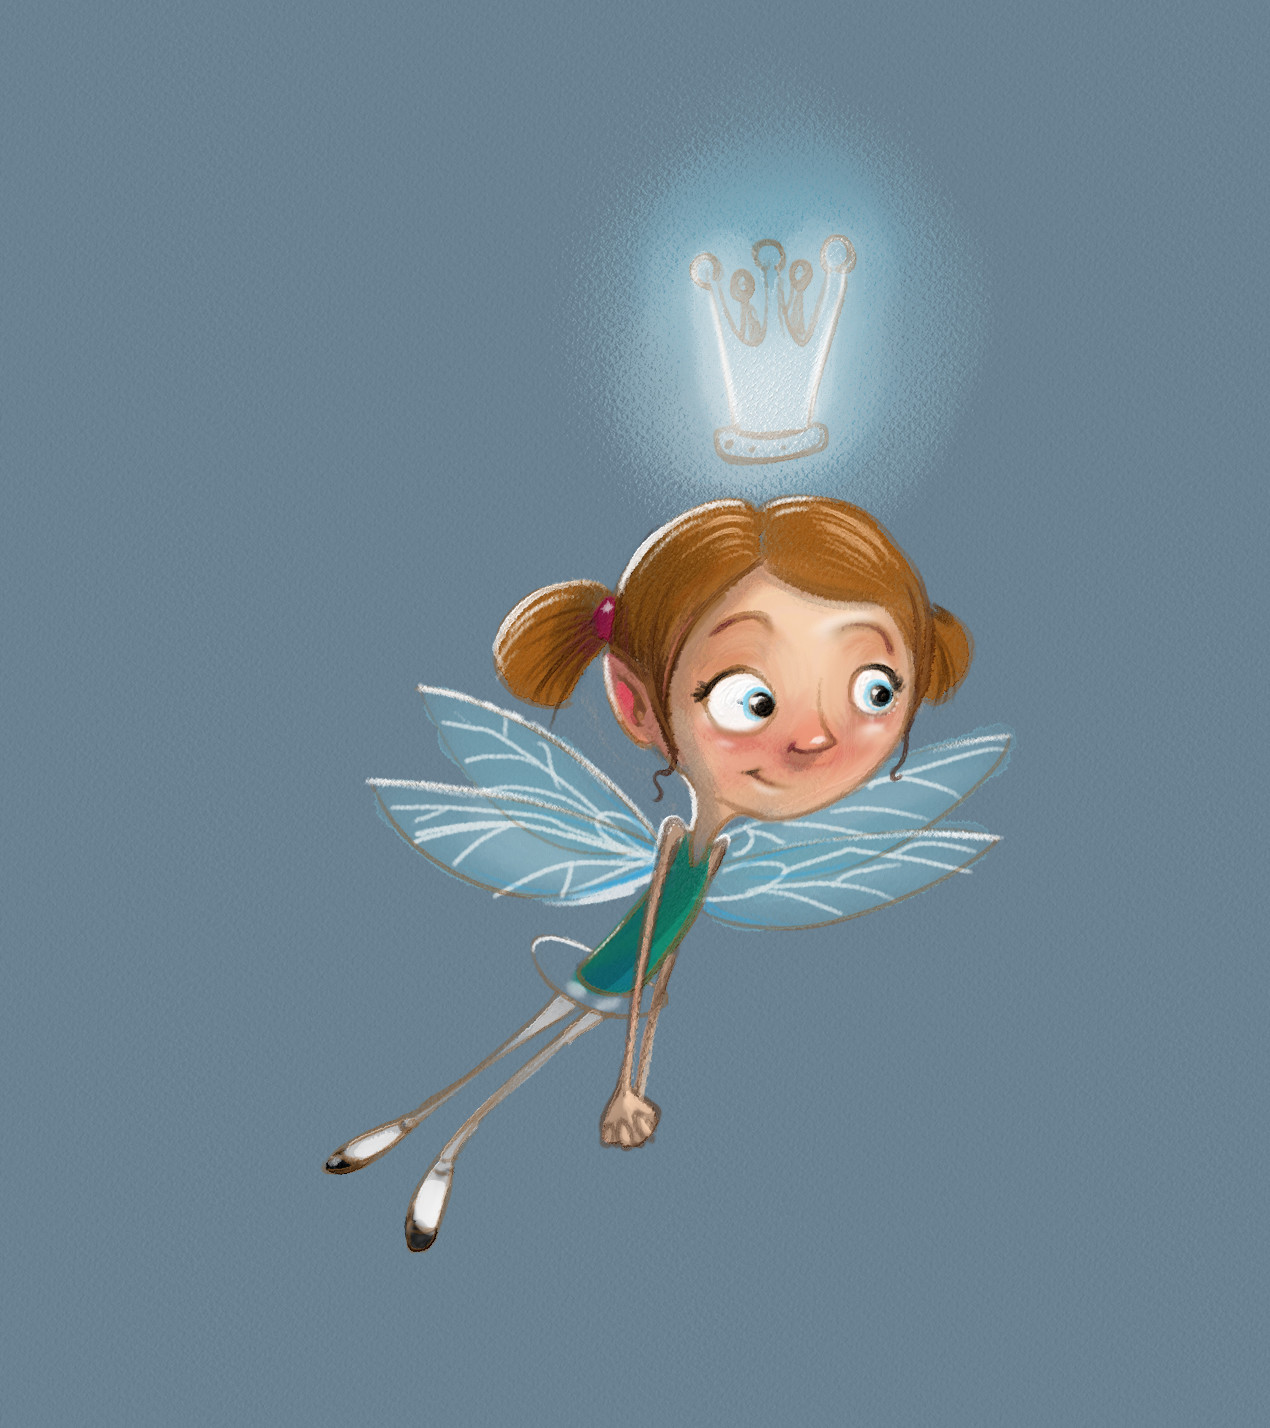 Fairy Concept for "Worm Fairy"